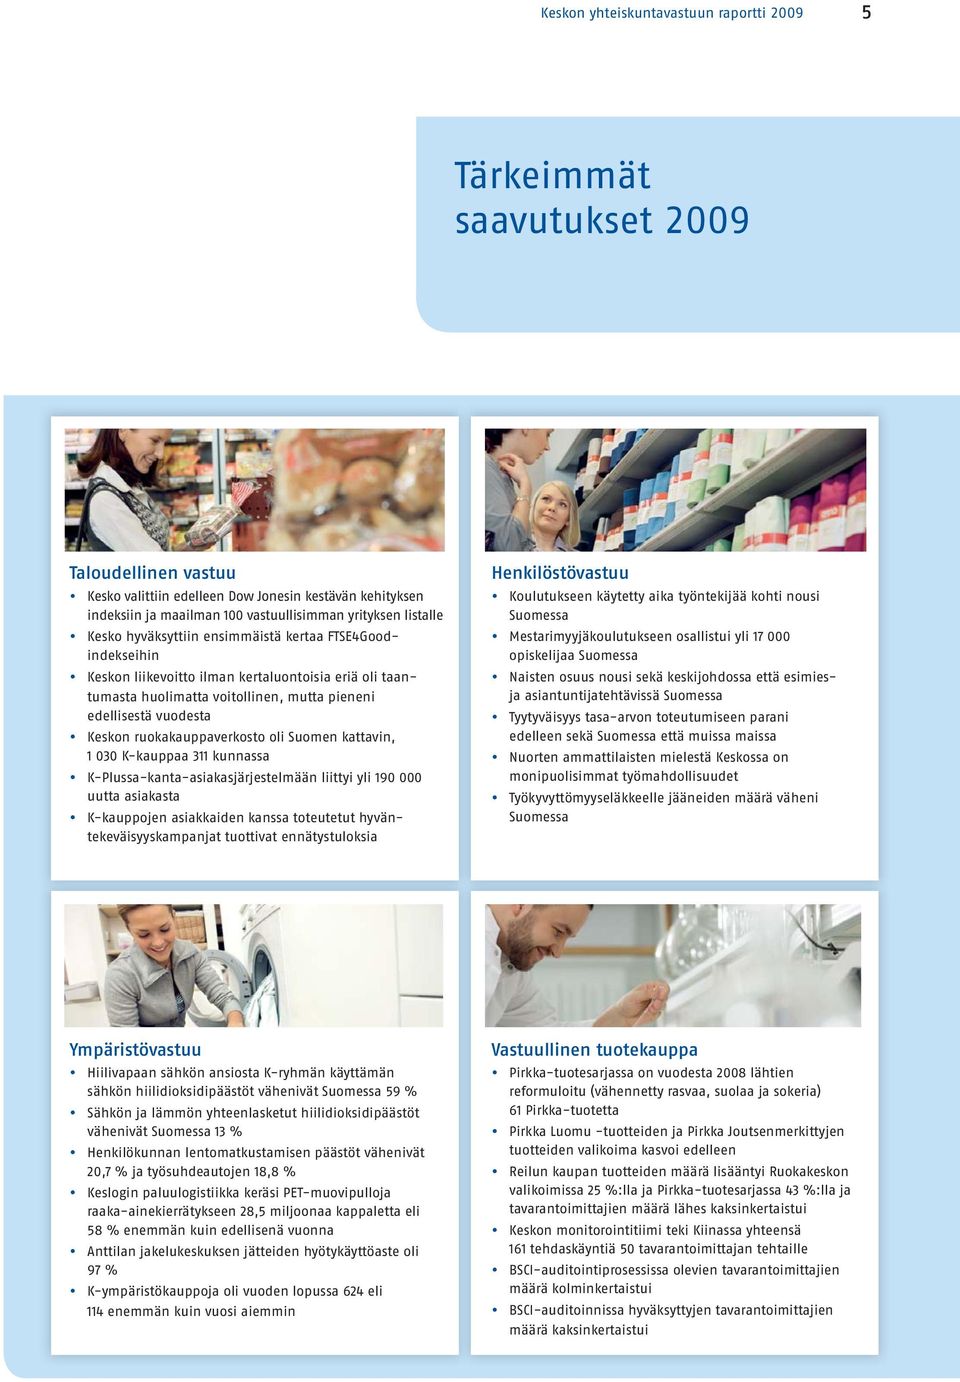 ruokakauppaverkosto oli Suomen kattavin, 1 030 K-kauppaa 311 kunnassa K-Plussa-kanta-asiakasjärjestelmään liittyi yli 190 000 uutta asiakasta K-kauppojen asiakkaiden kanssa toteutetut